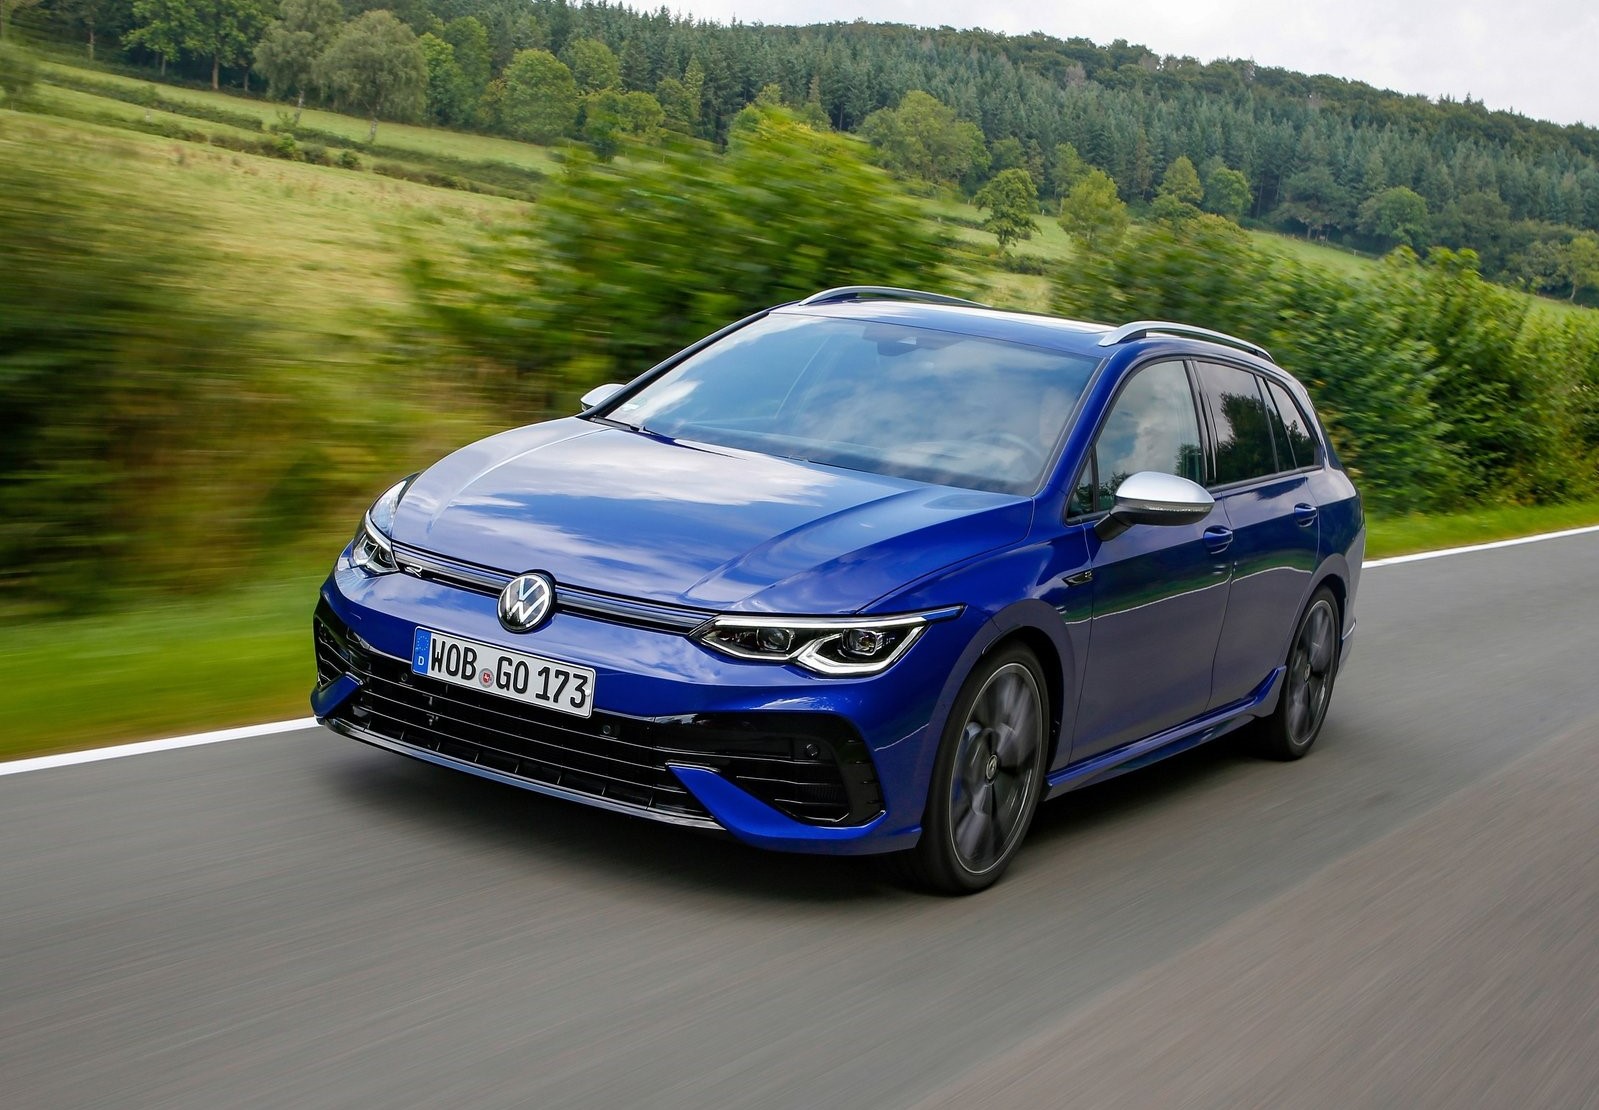 VW Golf 8 Ausstattungs-Tipps: So würden wir ihn konfigurieren! » Motoreport